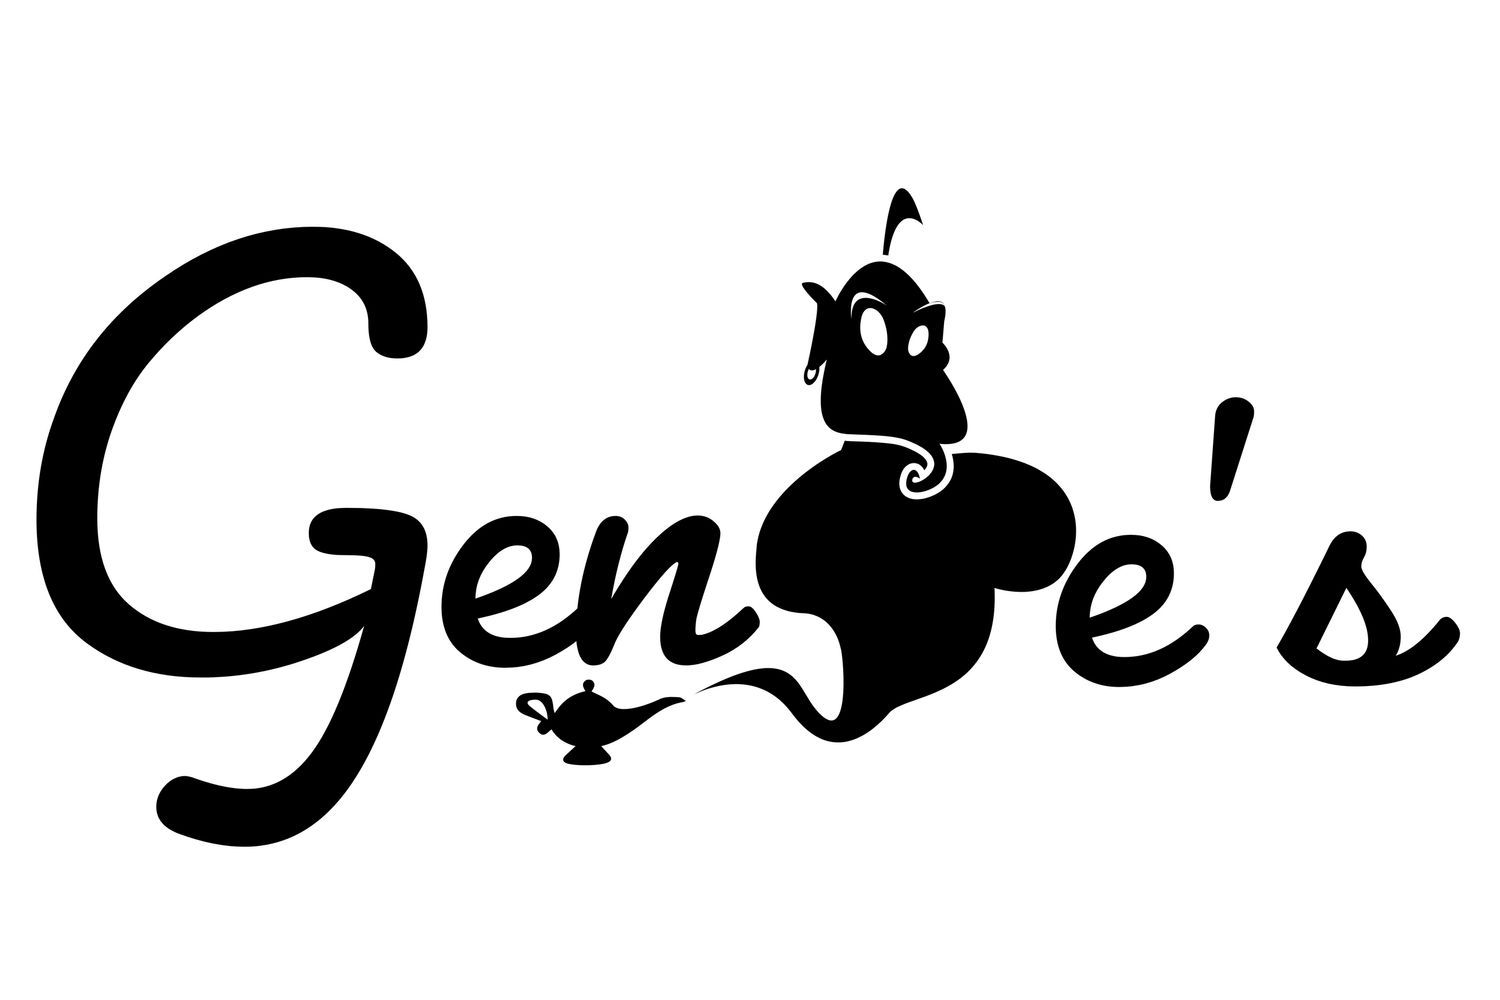 Genie's